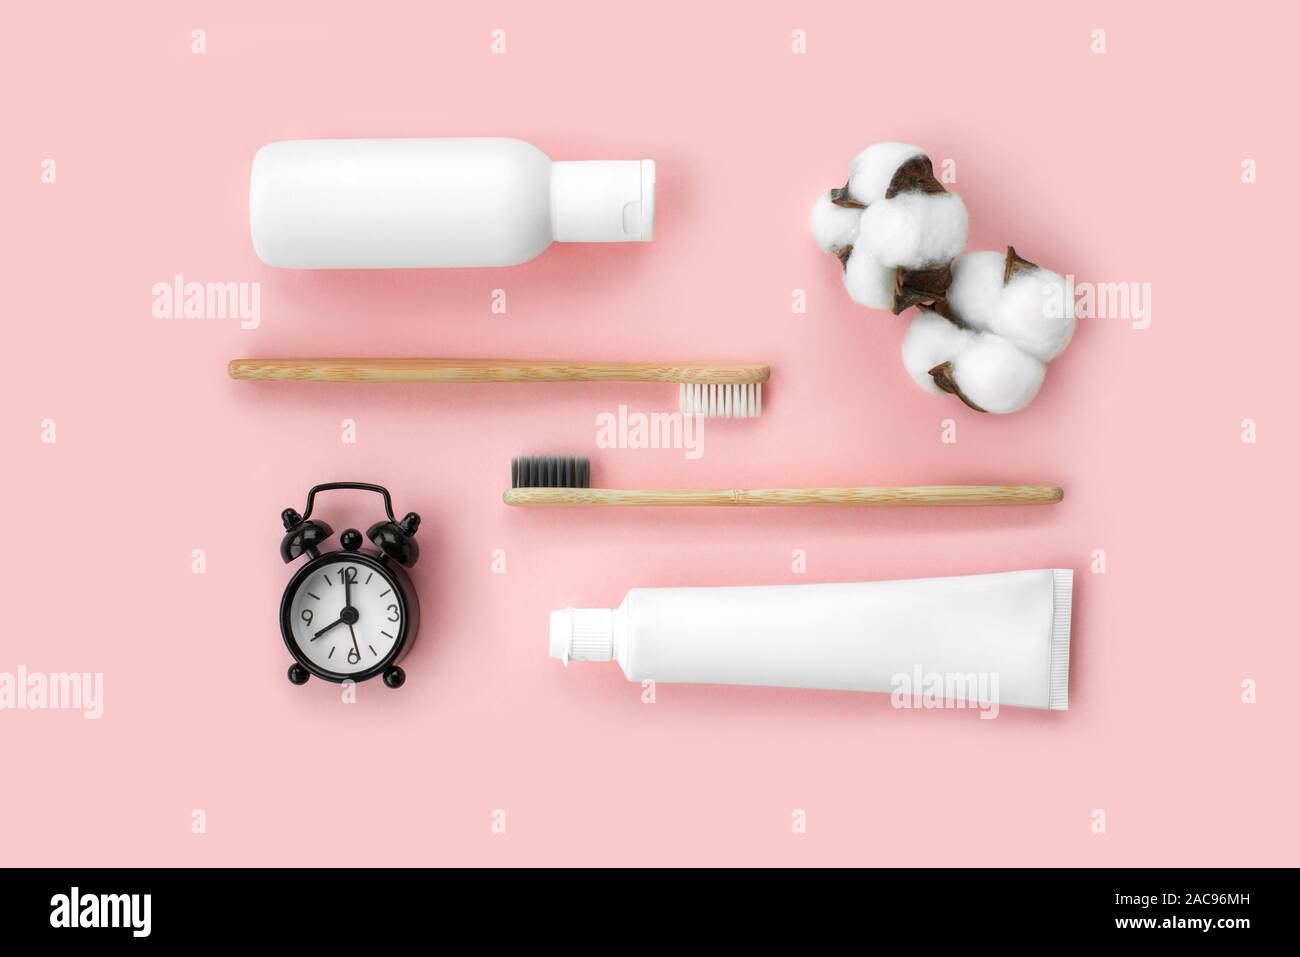 Set di eco-friendly spazzolini da denti e dentifricio e altri strumenti su sfondo rosa. Dentale e concetto di assistenza sanitaria. Vista superiore, piatto laici. Foto Stock